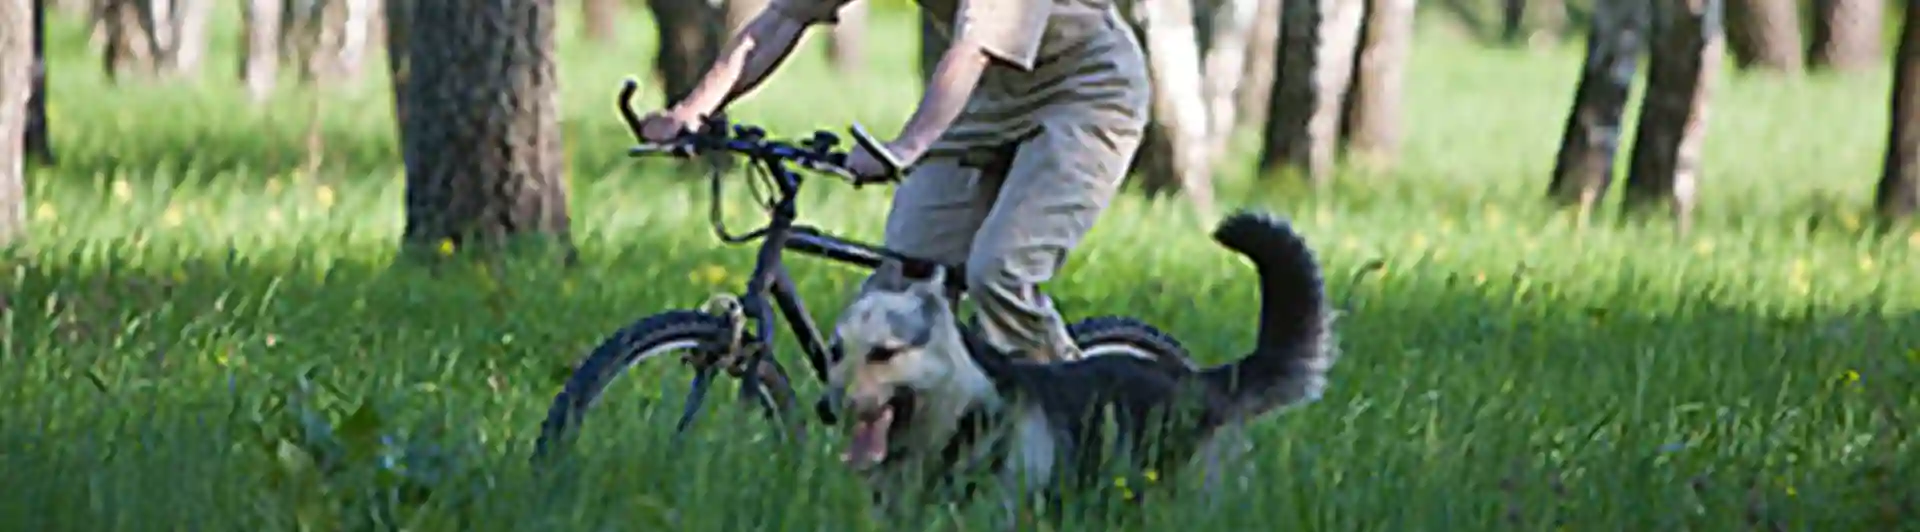 Cykling med hund i björkskog under ett uthållighetsprov (UHP)